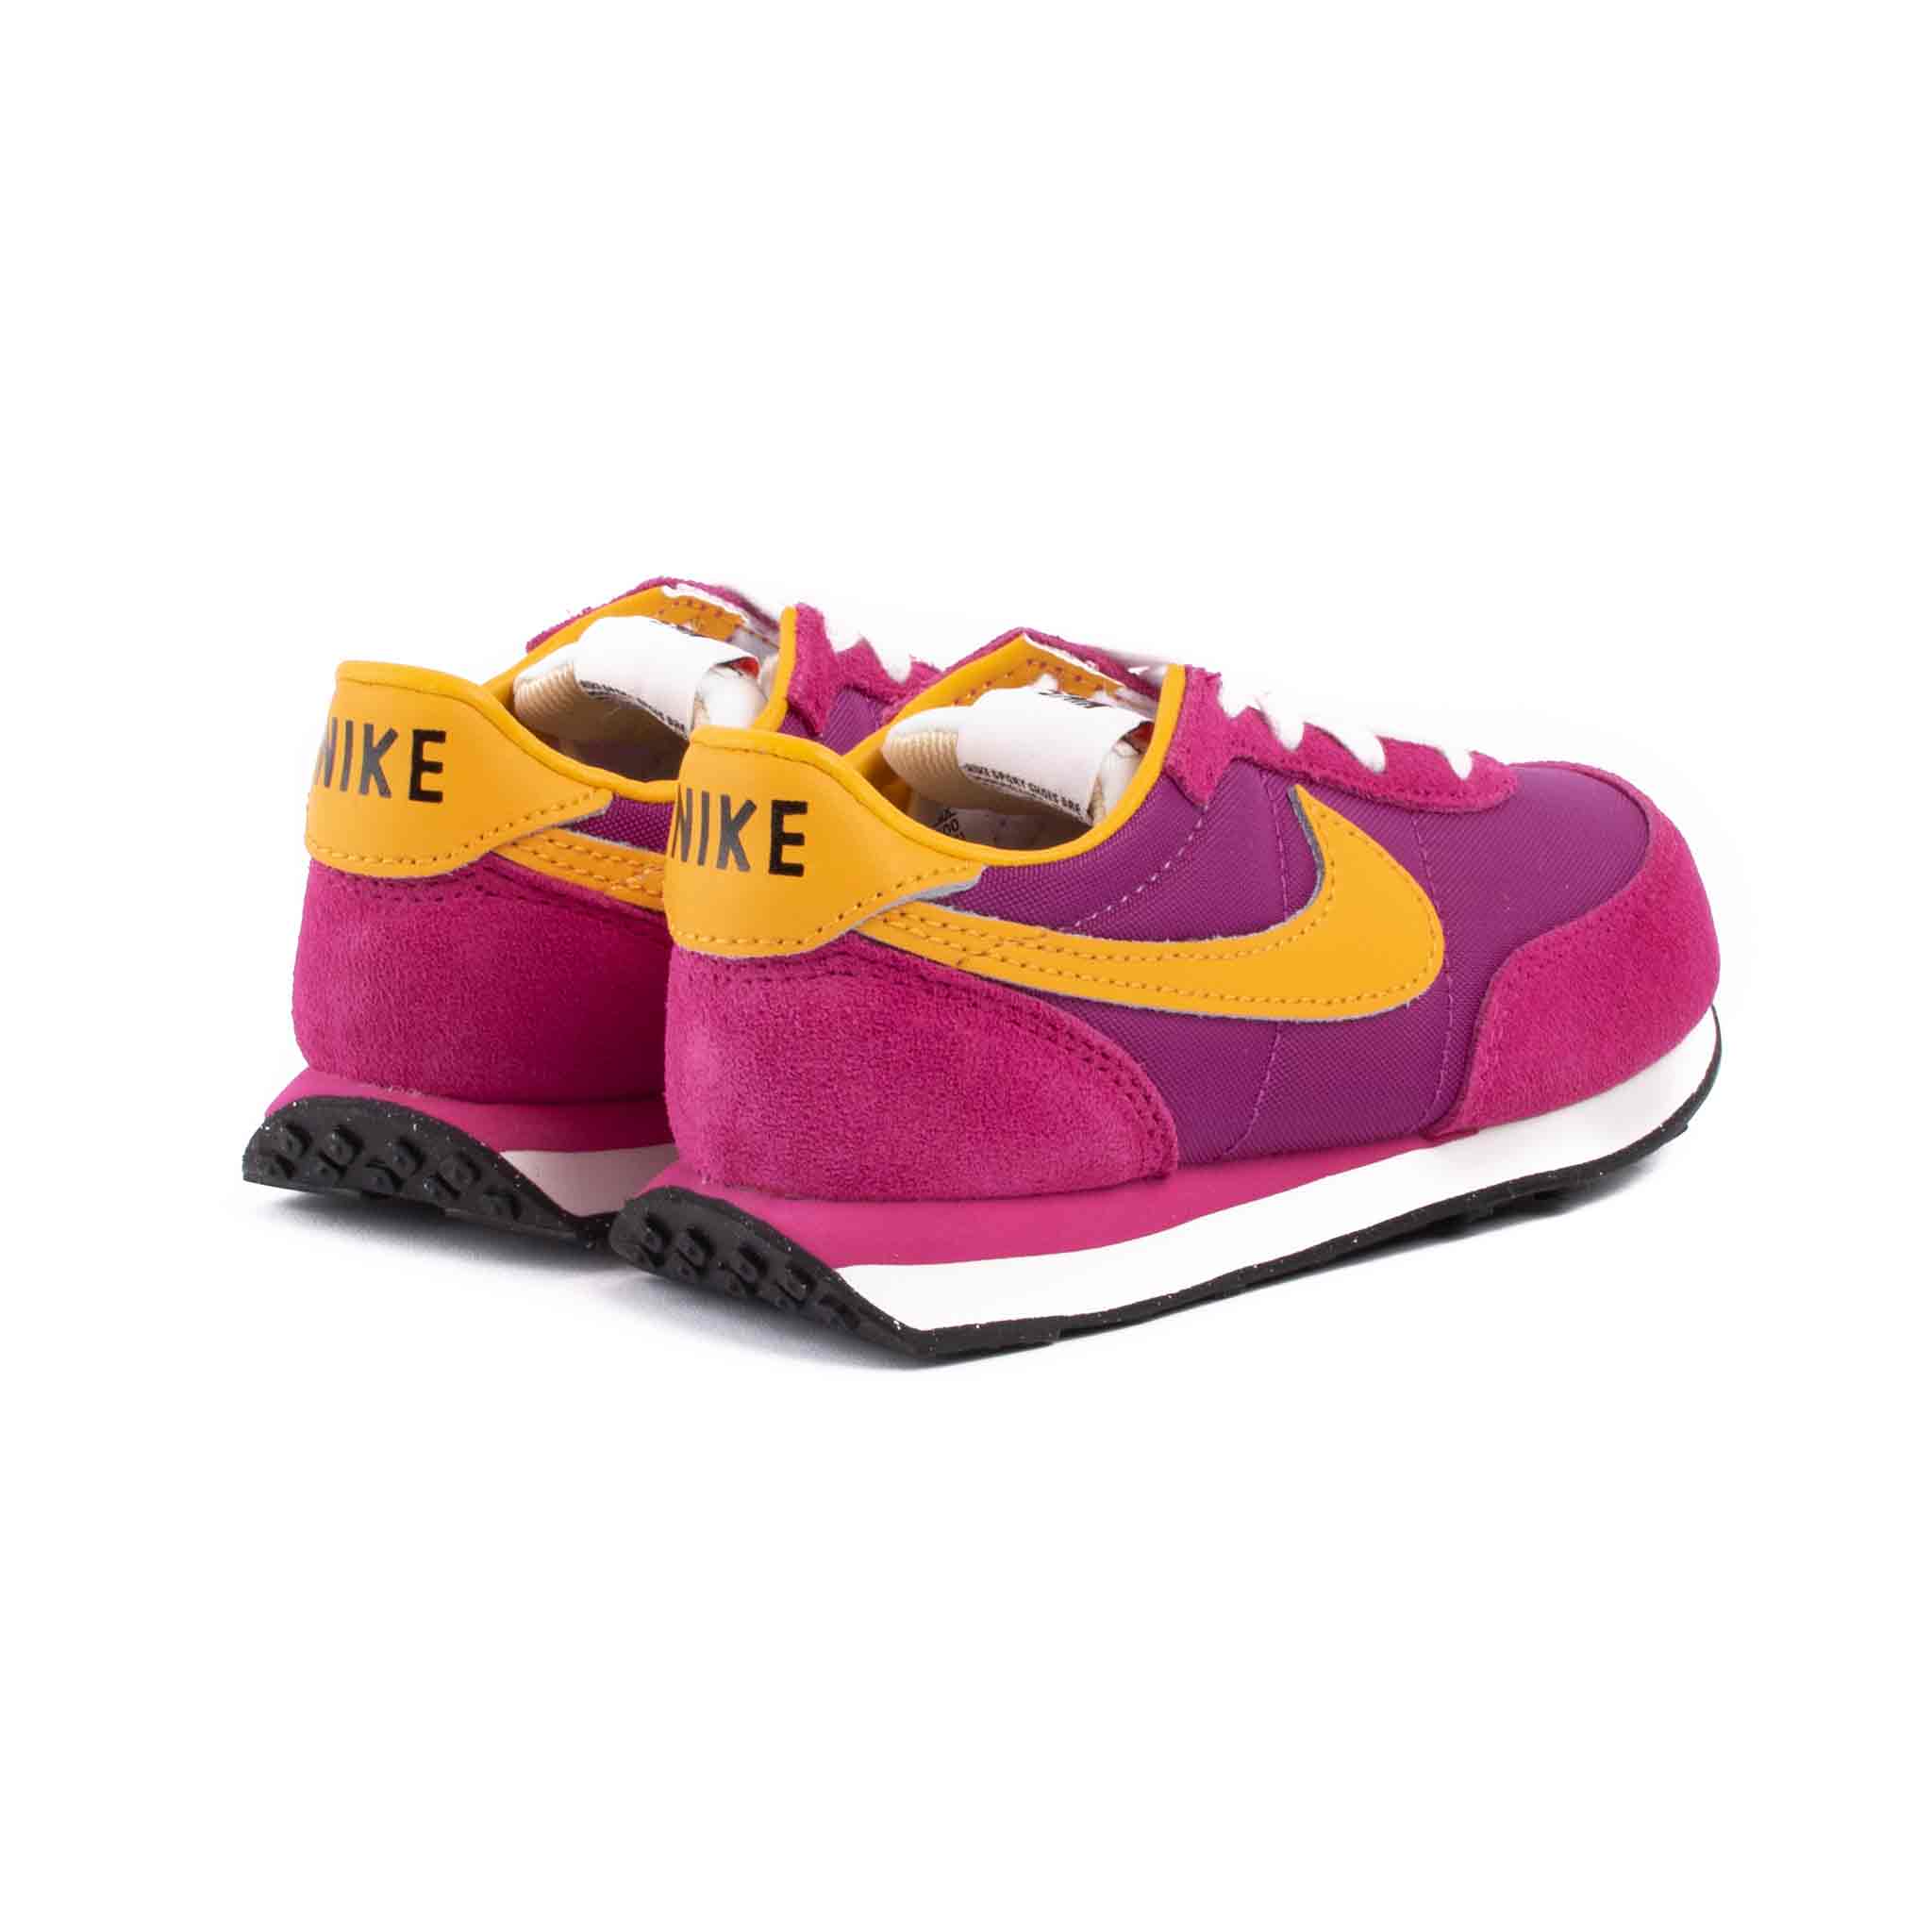 Nike Waffle Trainer 2 SP (TD) Fireberry/Electro Orange Back